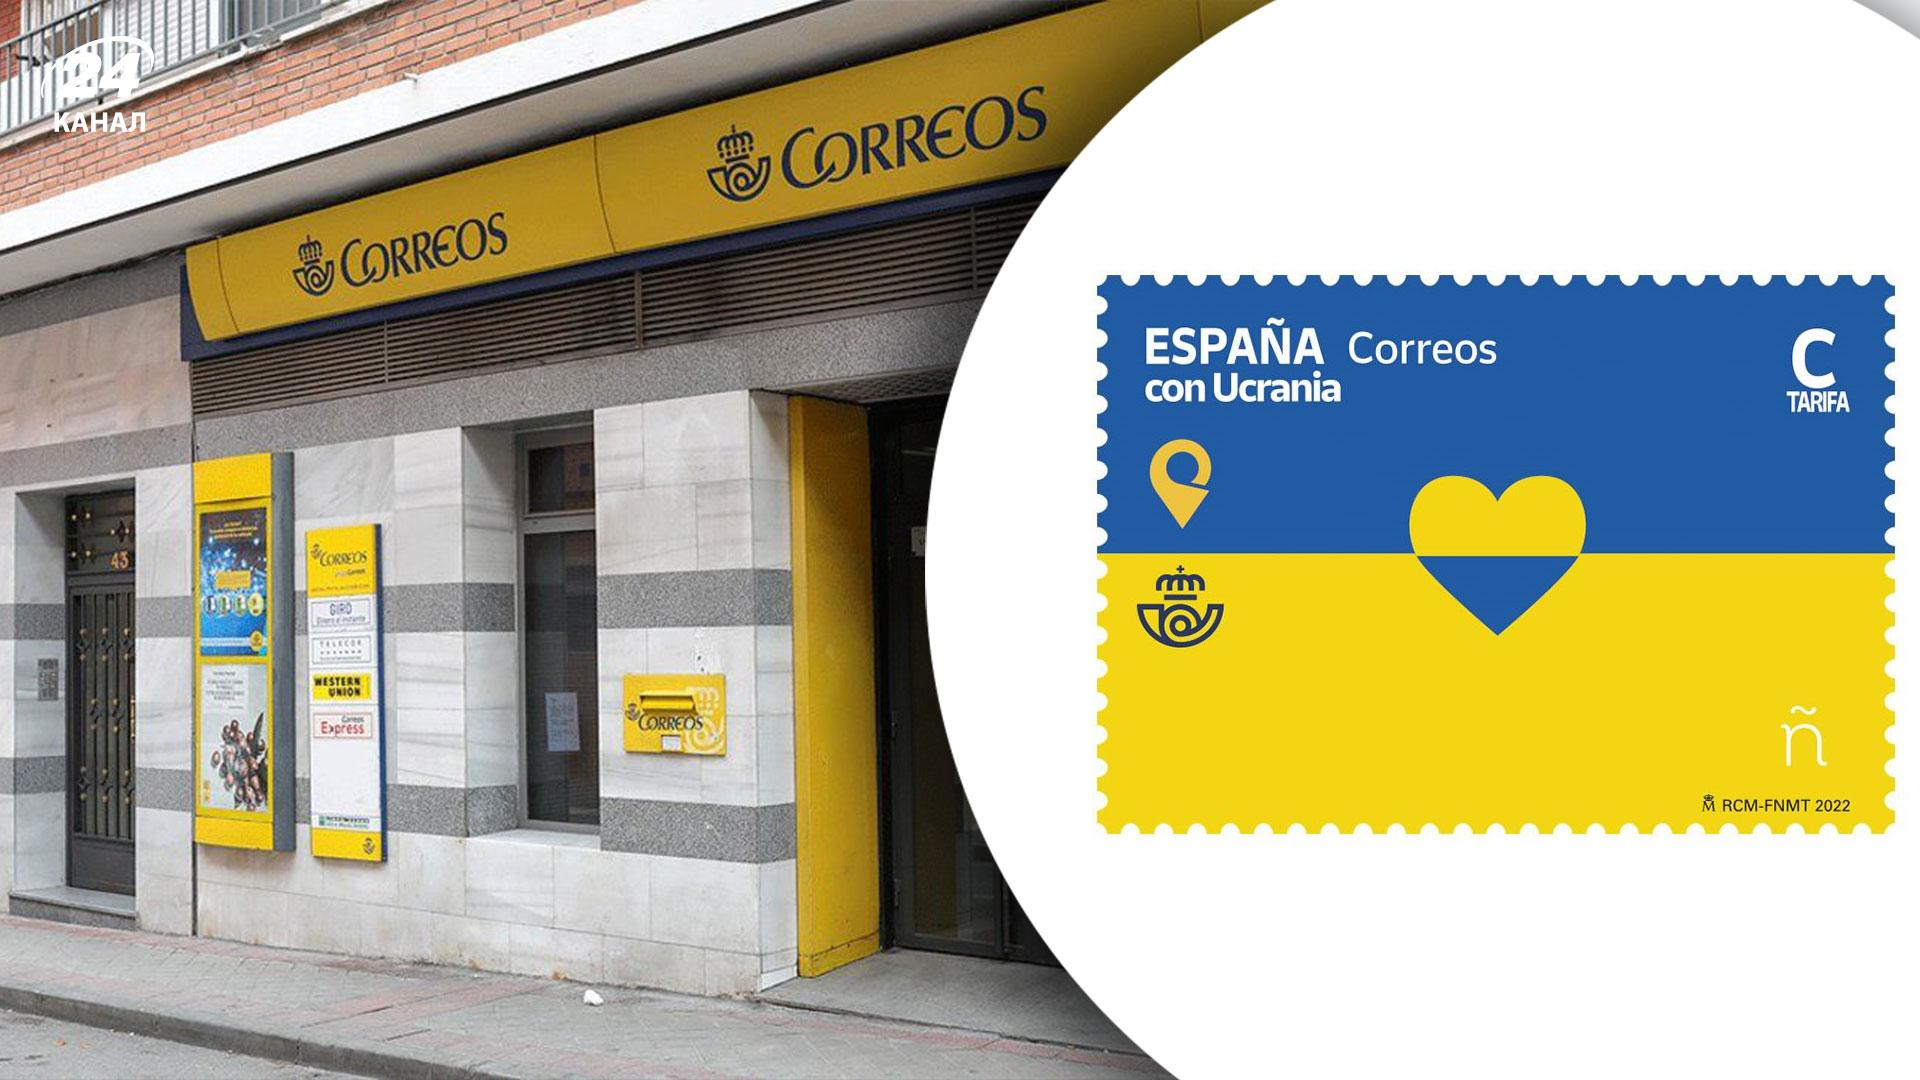 Испанская почта выпустила марку "Испания с Украиной"